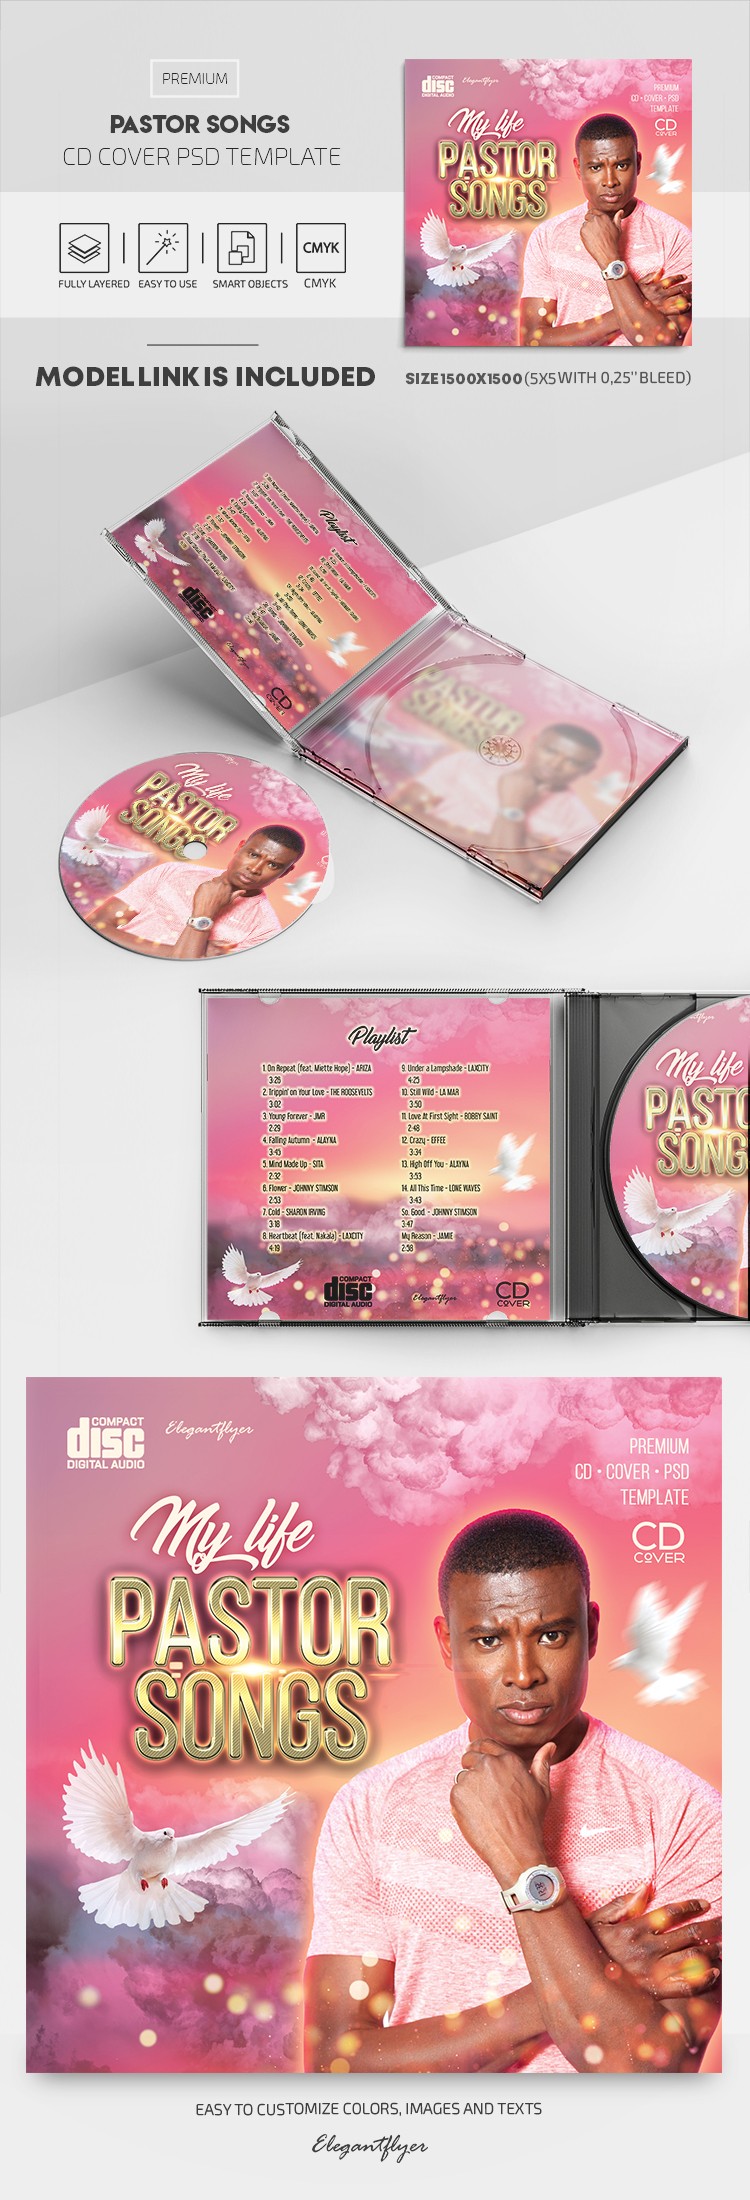 Portada del CD de canciones del Pastor by ElegantFlyer